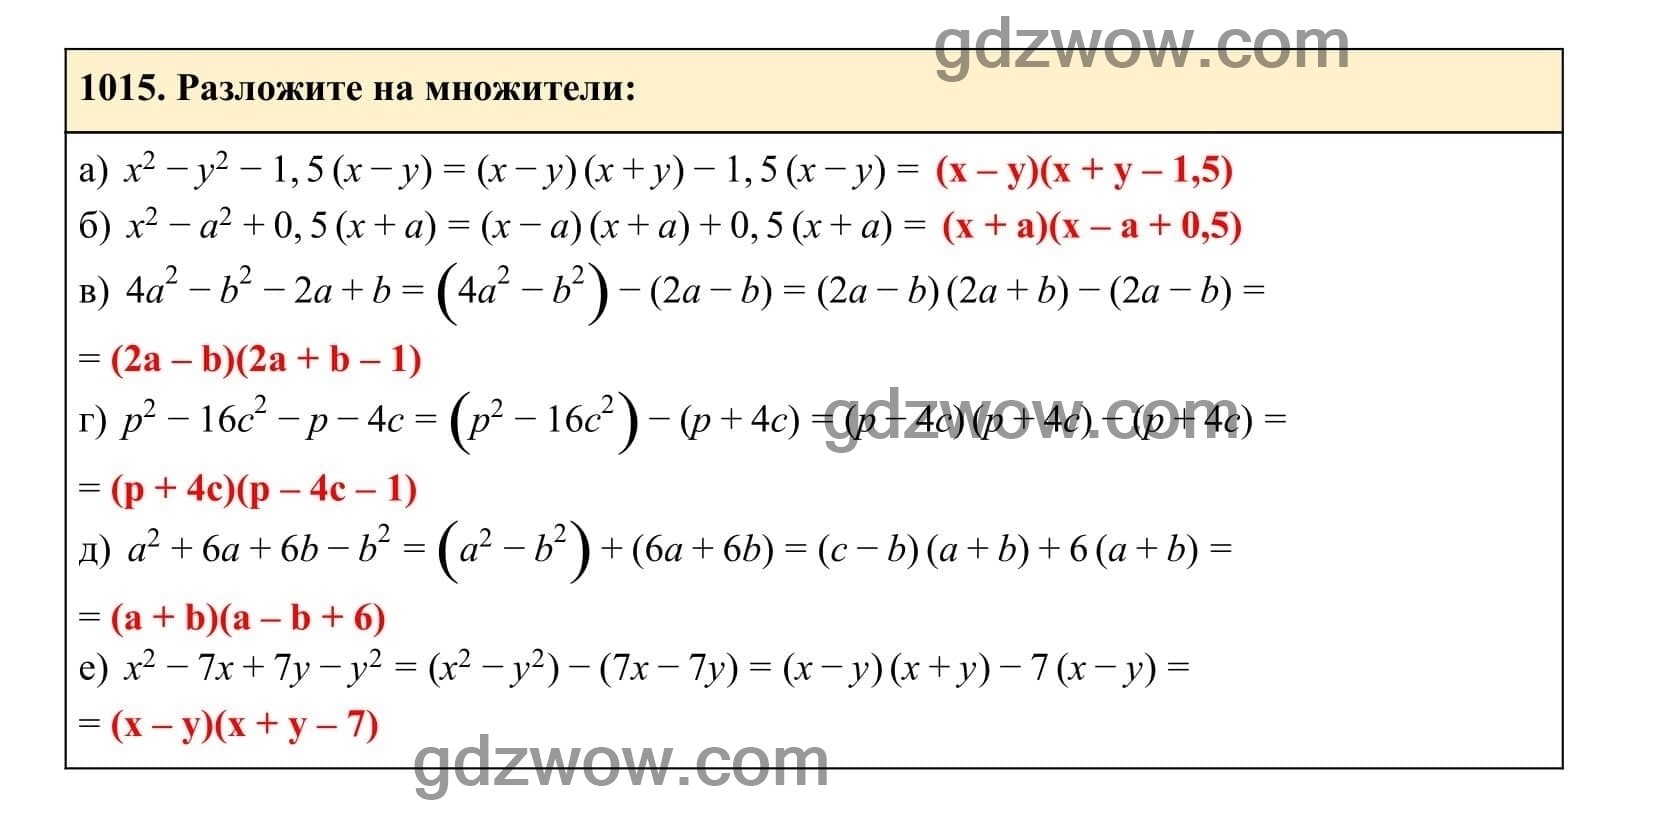 Упражнение 1015 - ГДЗ по Алгебре 7 класс Учебник Макарычев (решебник) - GDZwow